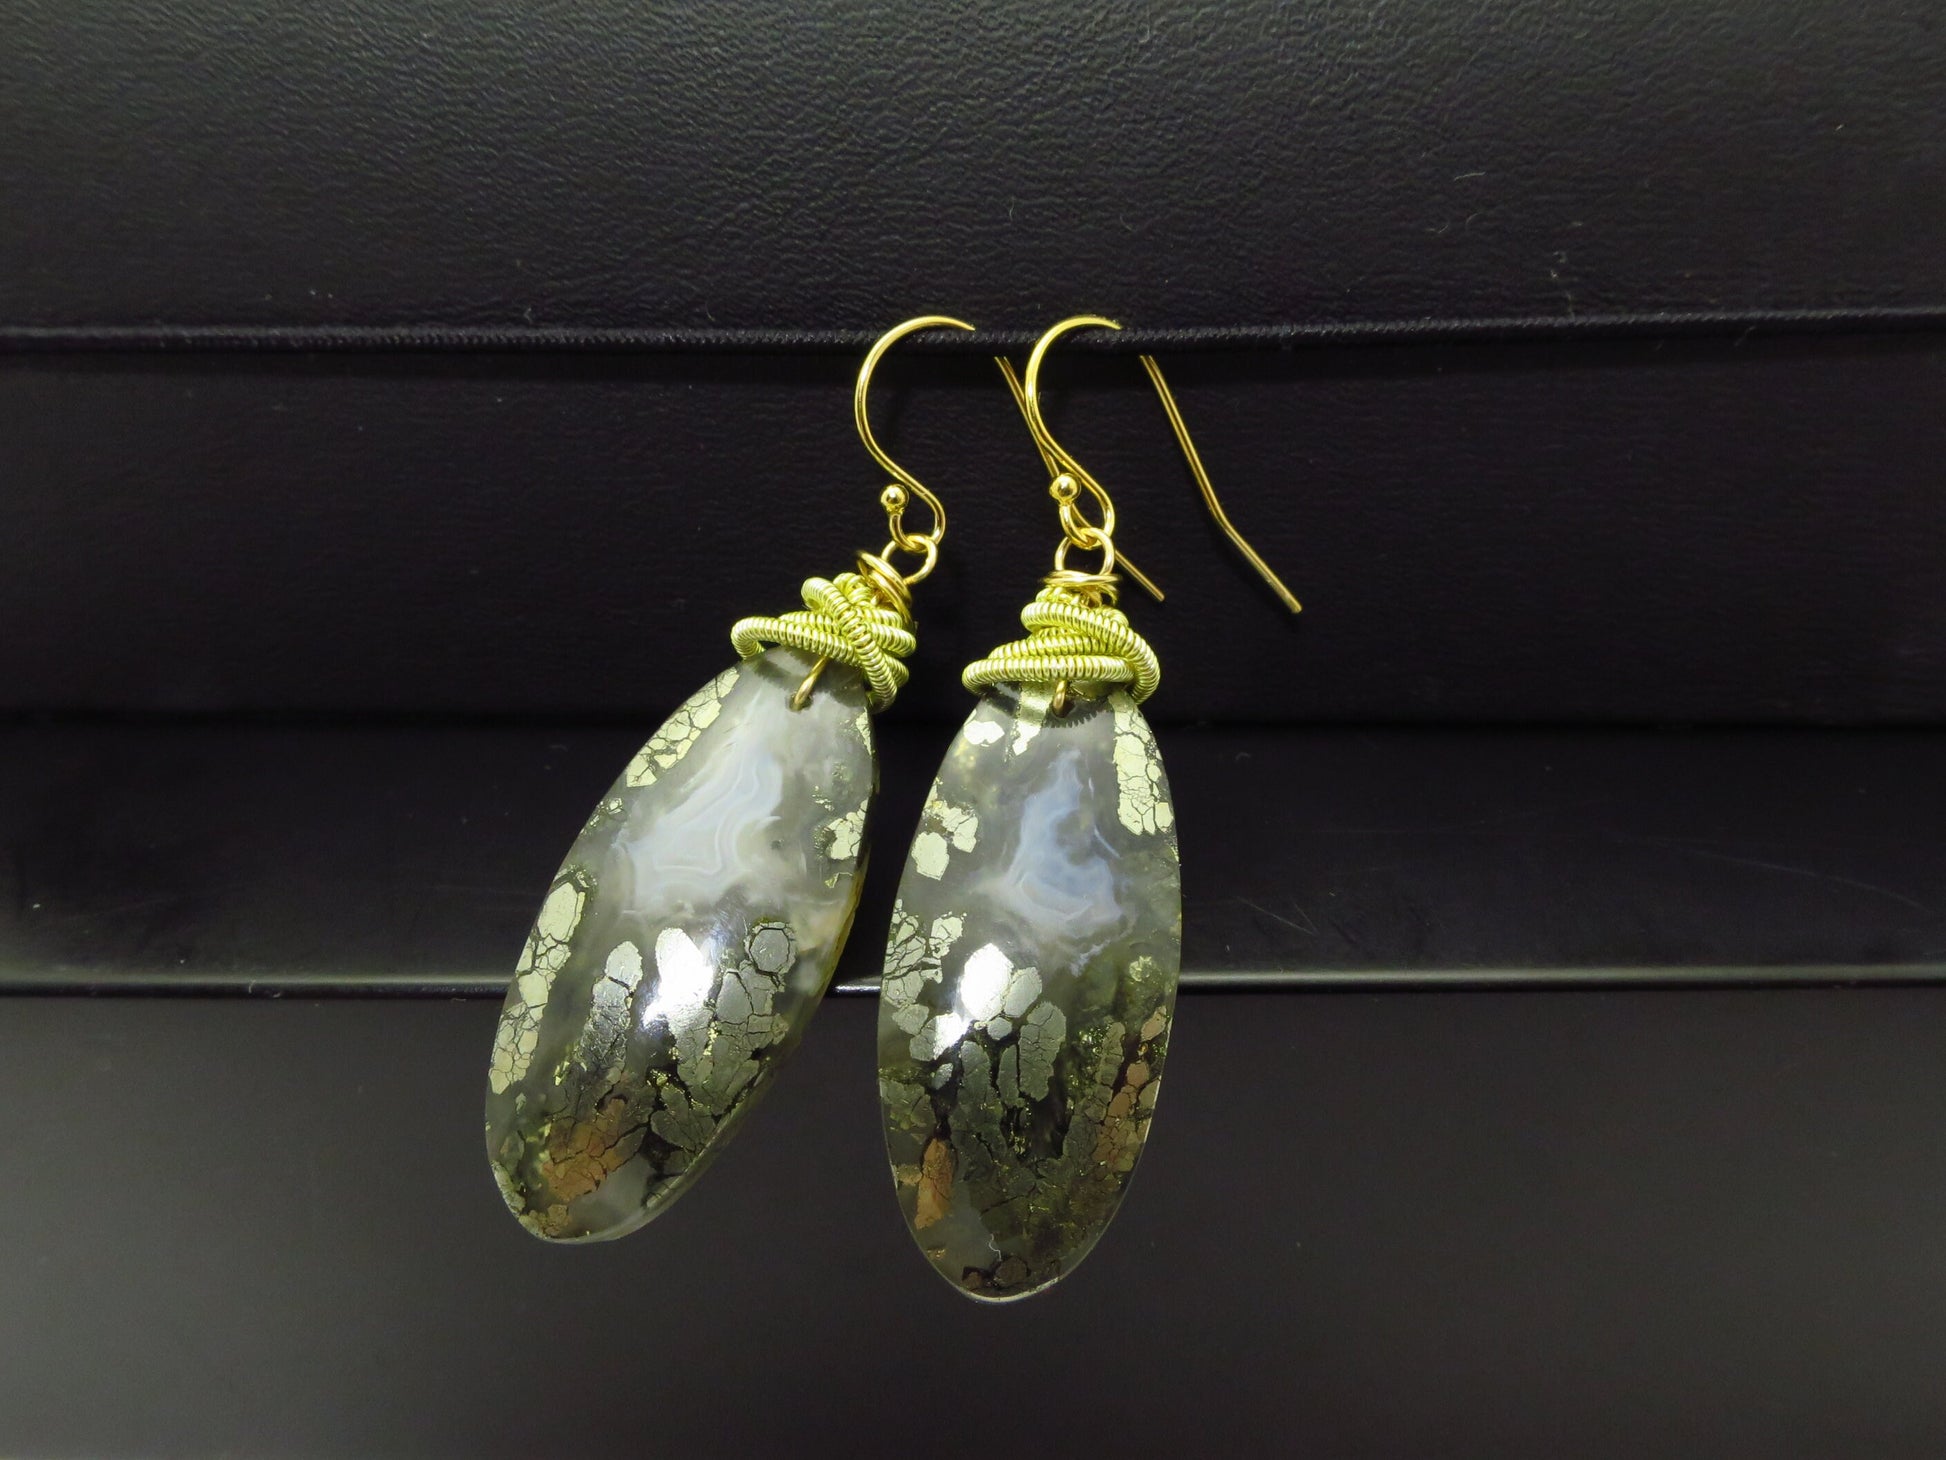 Unique earrings Marcasite quartz gemstones gold filled ear hooks unique earrings long Drops handmade unique gem earrings